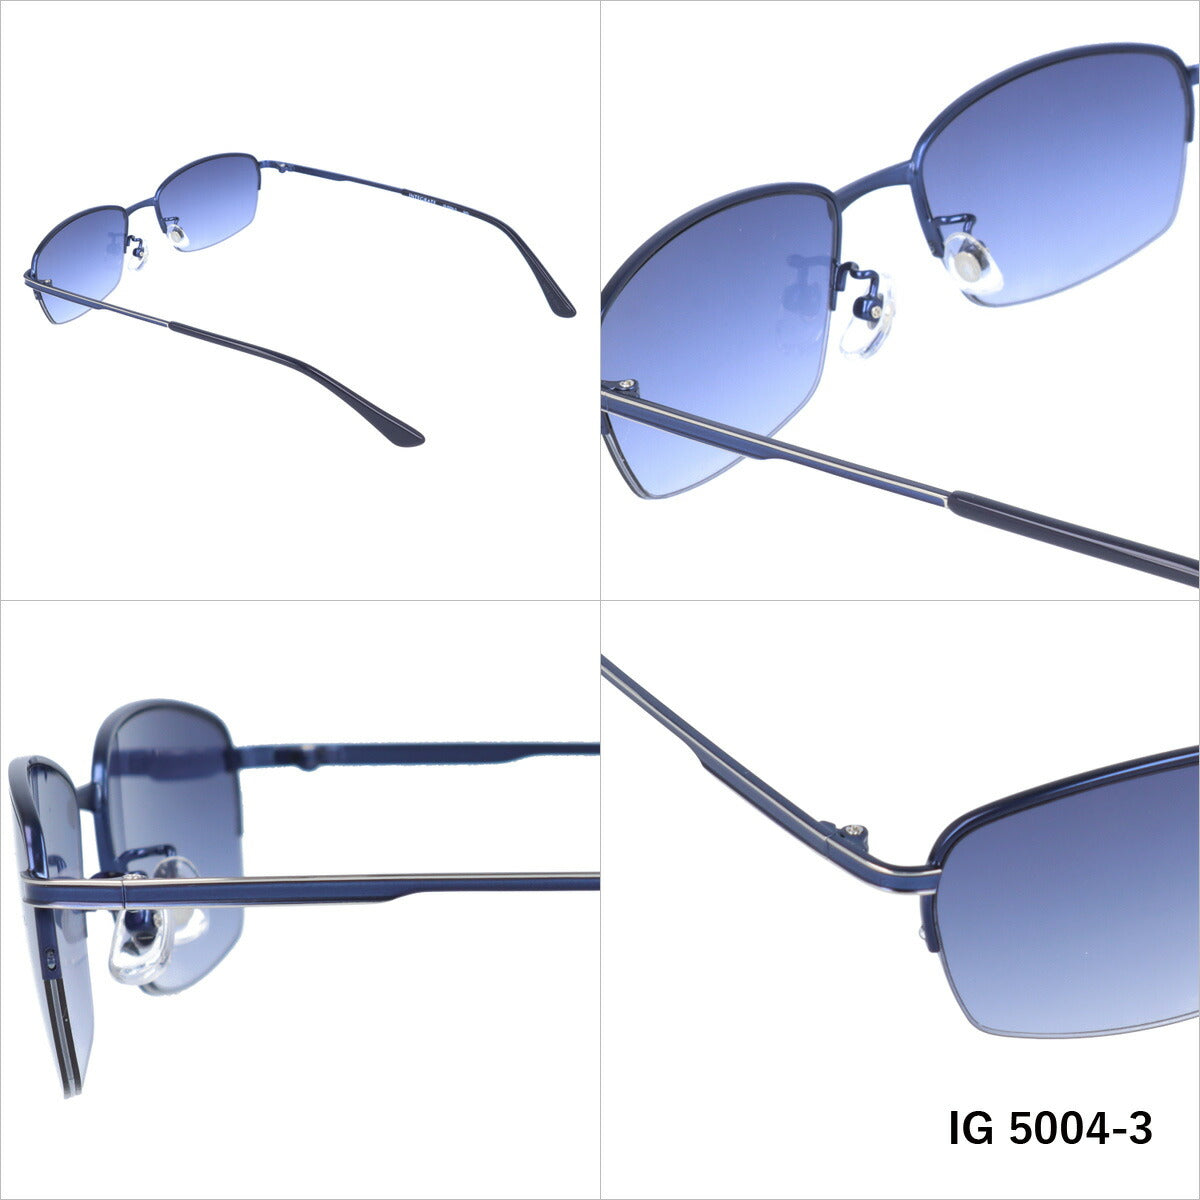 おしゃれ サングラス INTEGRATE インテグレート IG 5004 全3色 56サイズ アジアンフィット スクエア型 メンズ レディース UVカット 紫外線 対策 ブランド 眼鏡 メガネ アイウェア 人気 おすすめ ラッピング無料